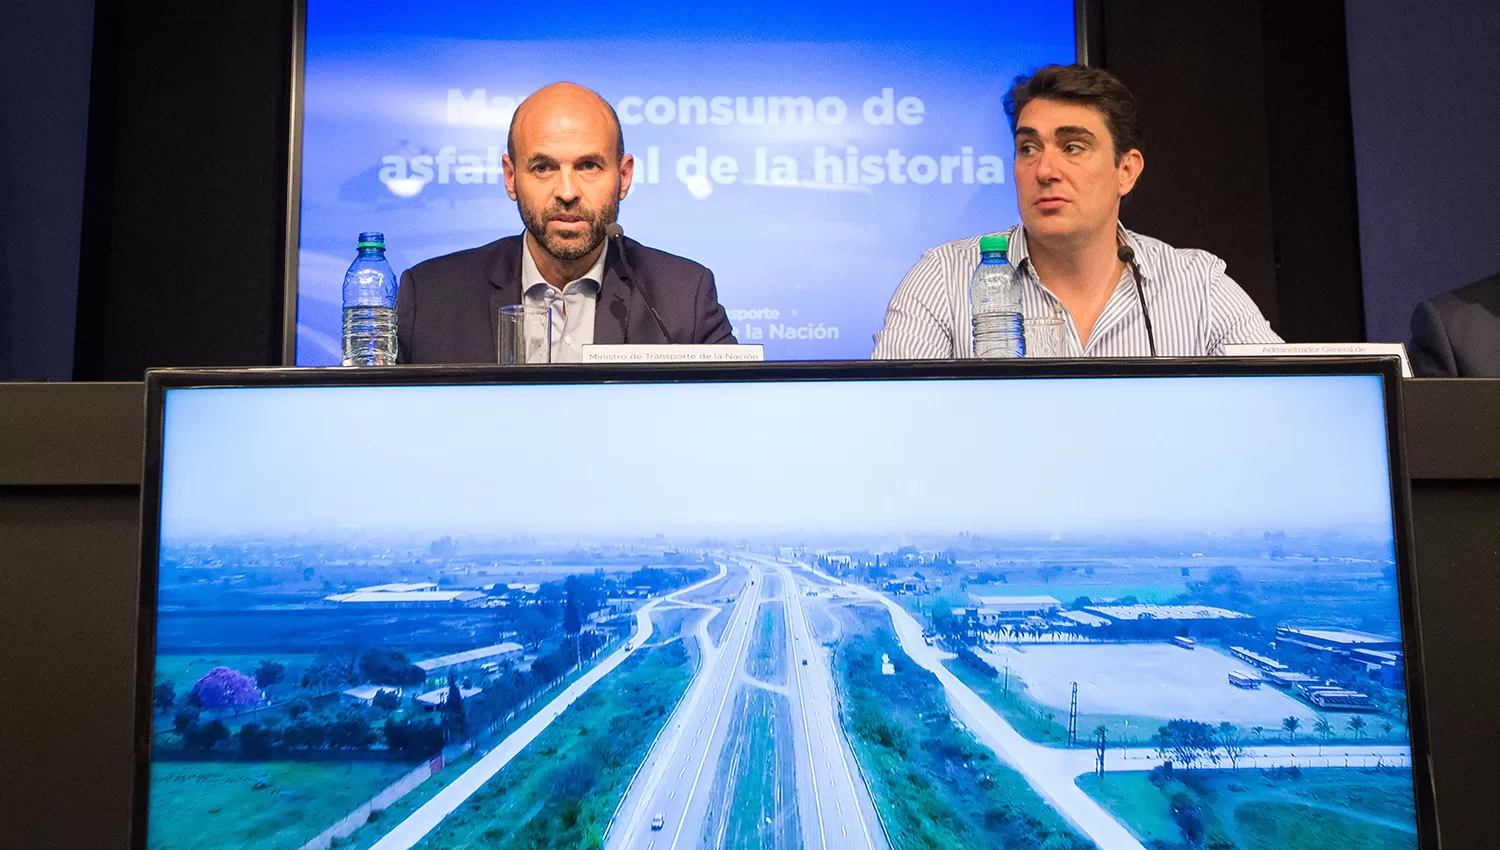 Dietrich, ministro de Transporte, anunció el mayor consumo de asfalta de la historia. FOTO PRENSA TRANSPORTE. 